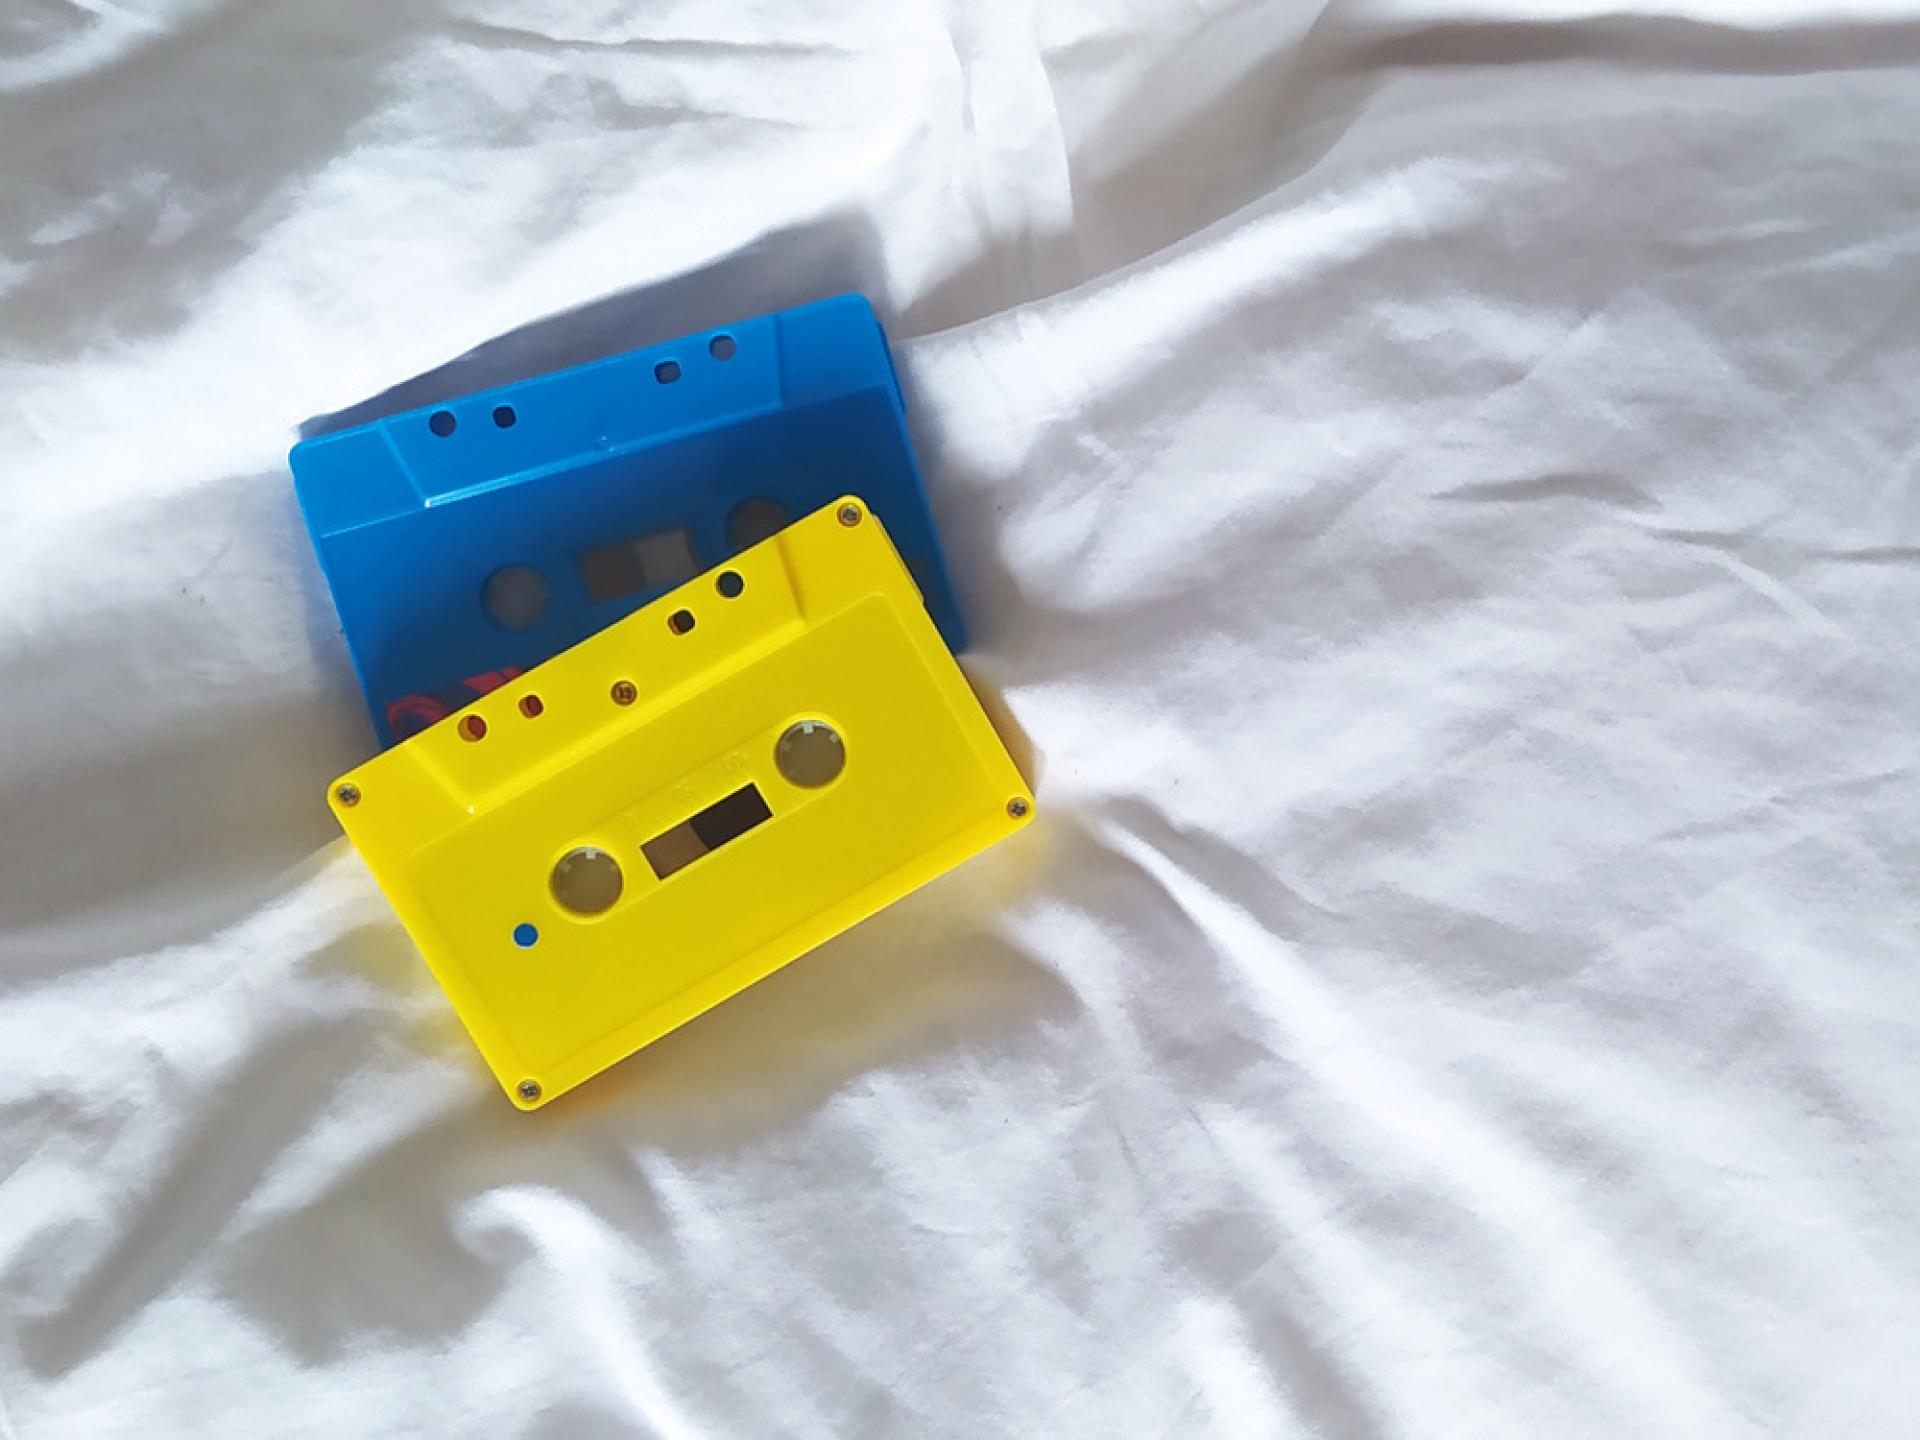 Zwei Musik-Kassetten liegen auf einem Bett.